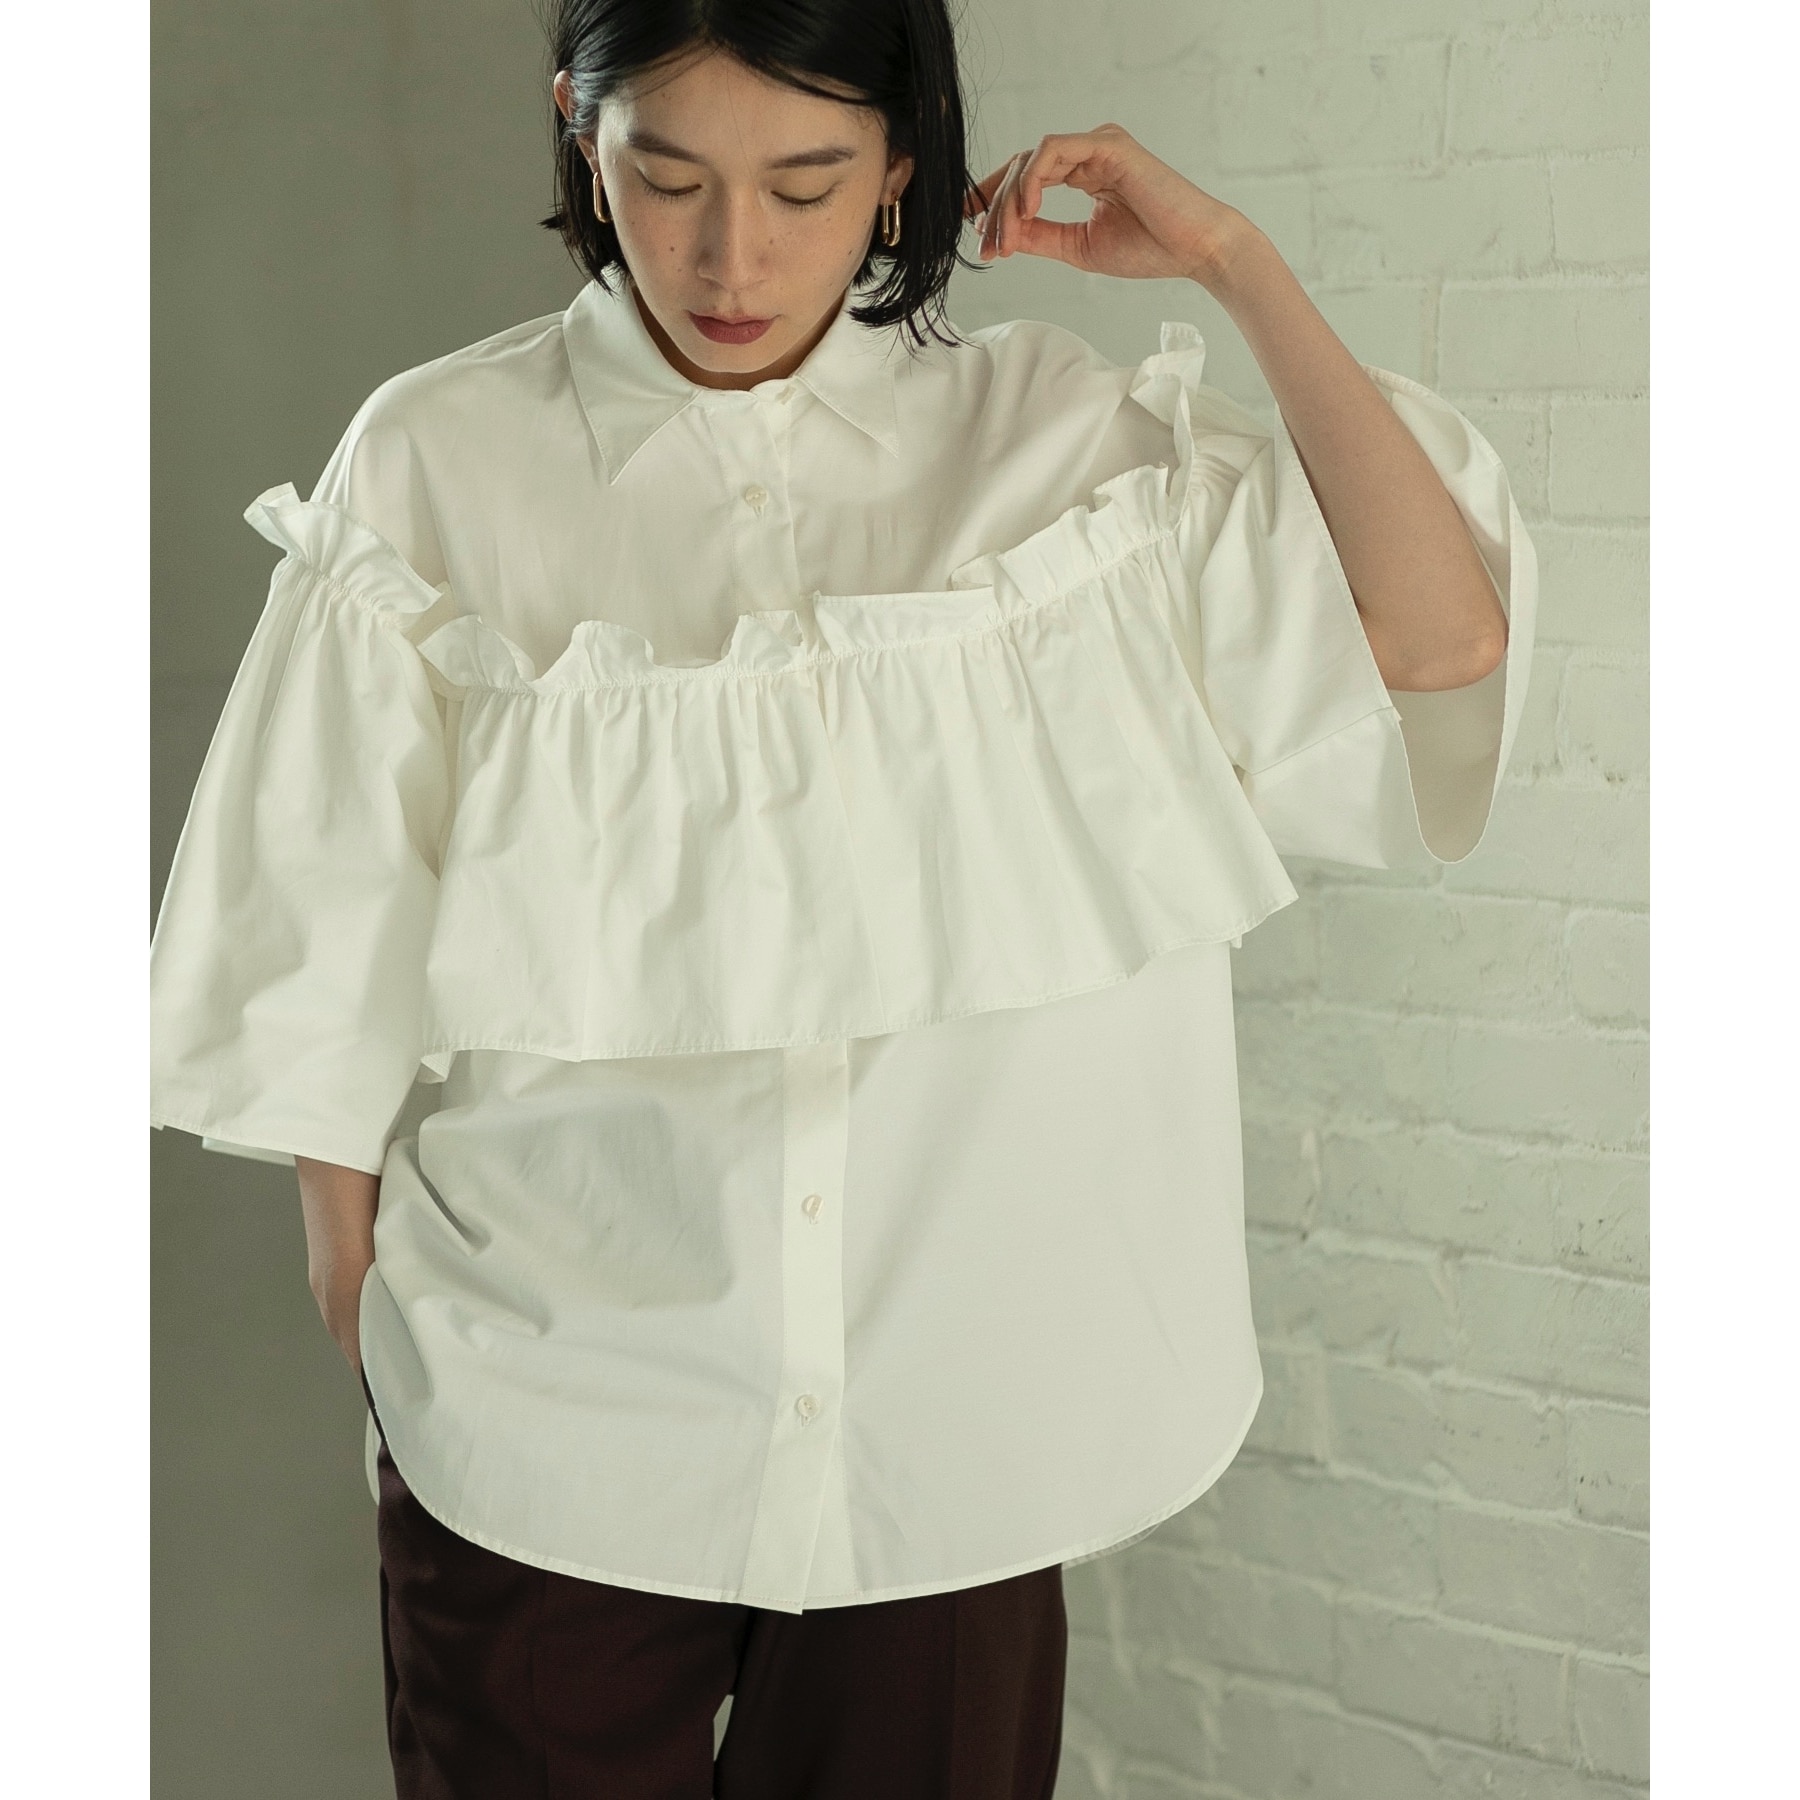 オペークドットクリップ(OPAQUE.CLIP)のフリルデザインシャツ/ブラウス【洗濯機洗い可】 ホワイト(002)